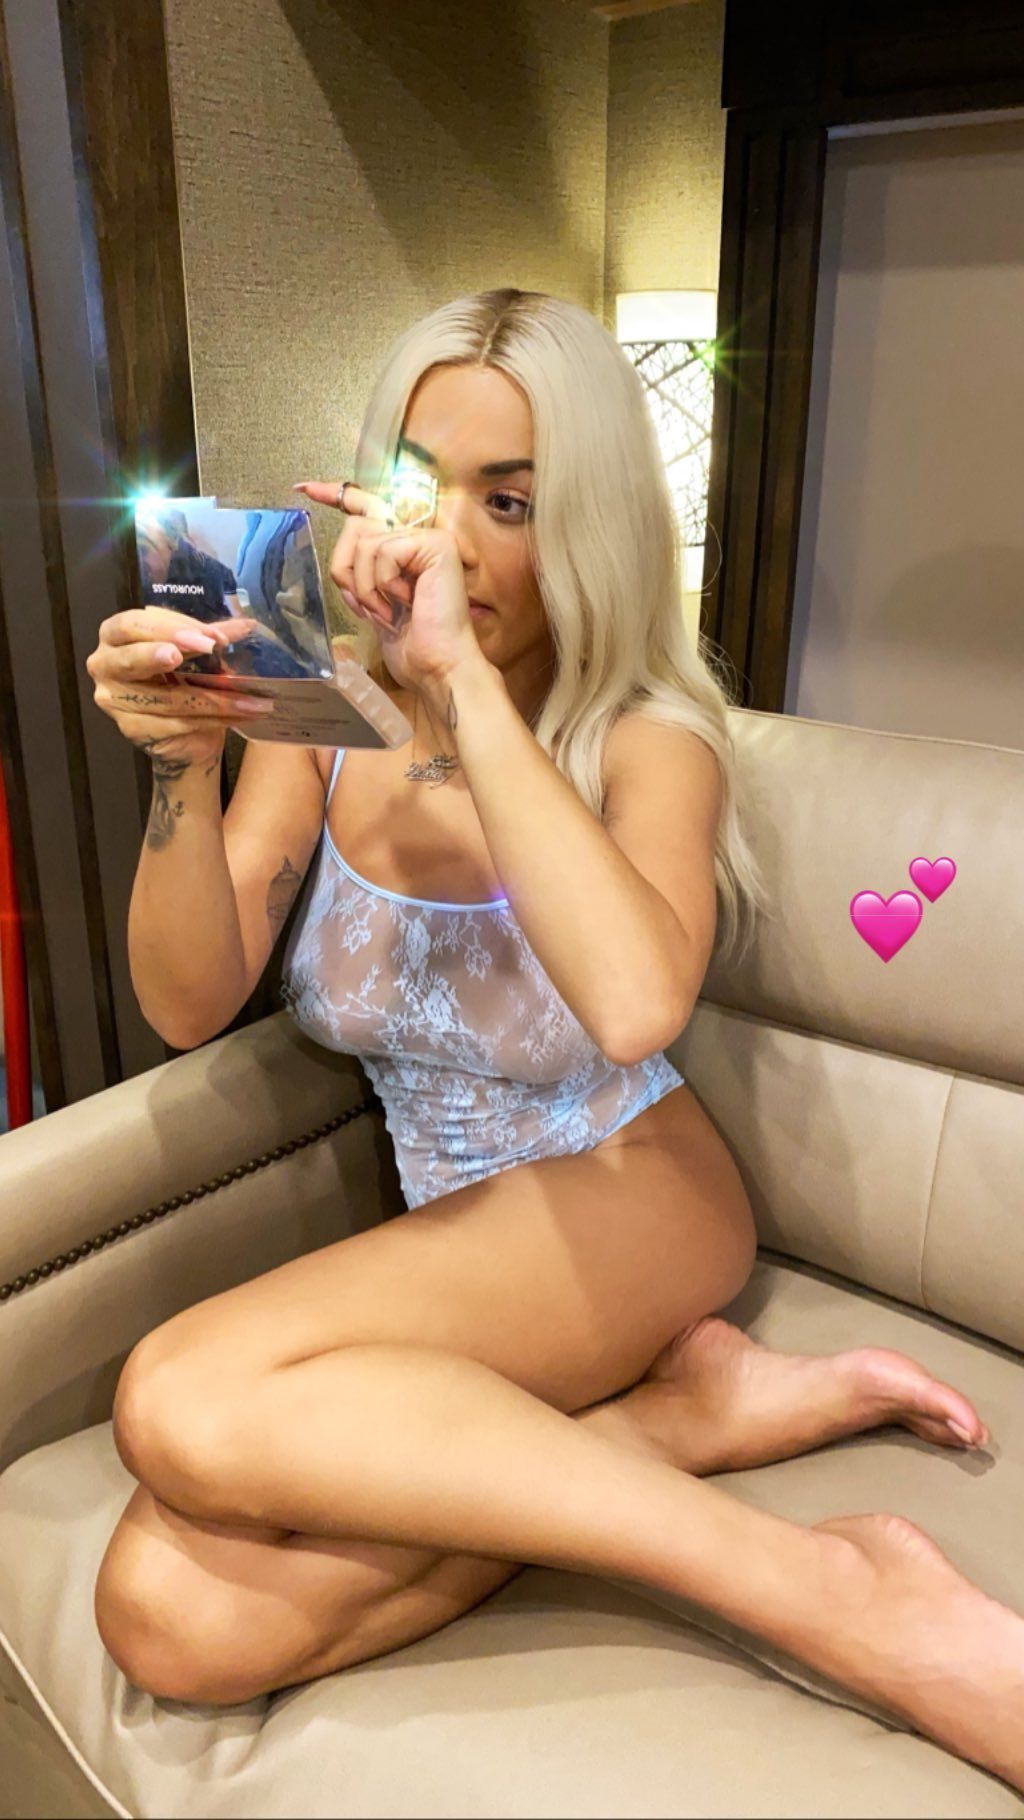 Rita Ora’s Tits in Lingerie (4 Photos)